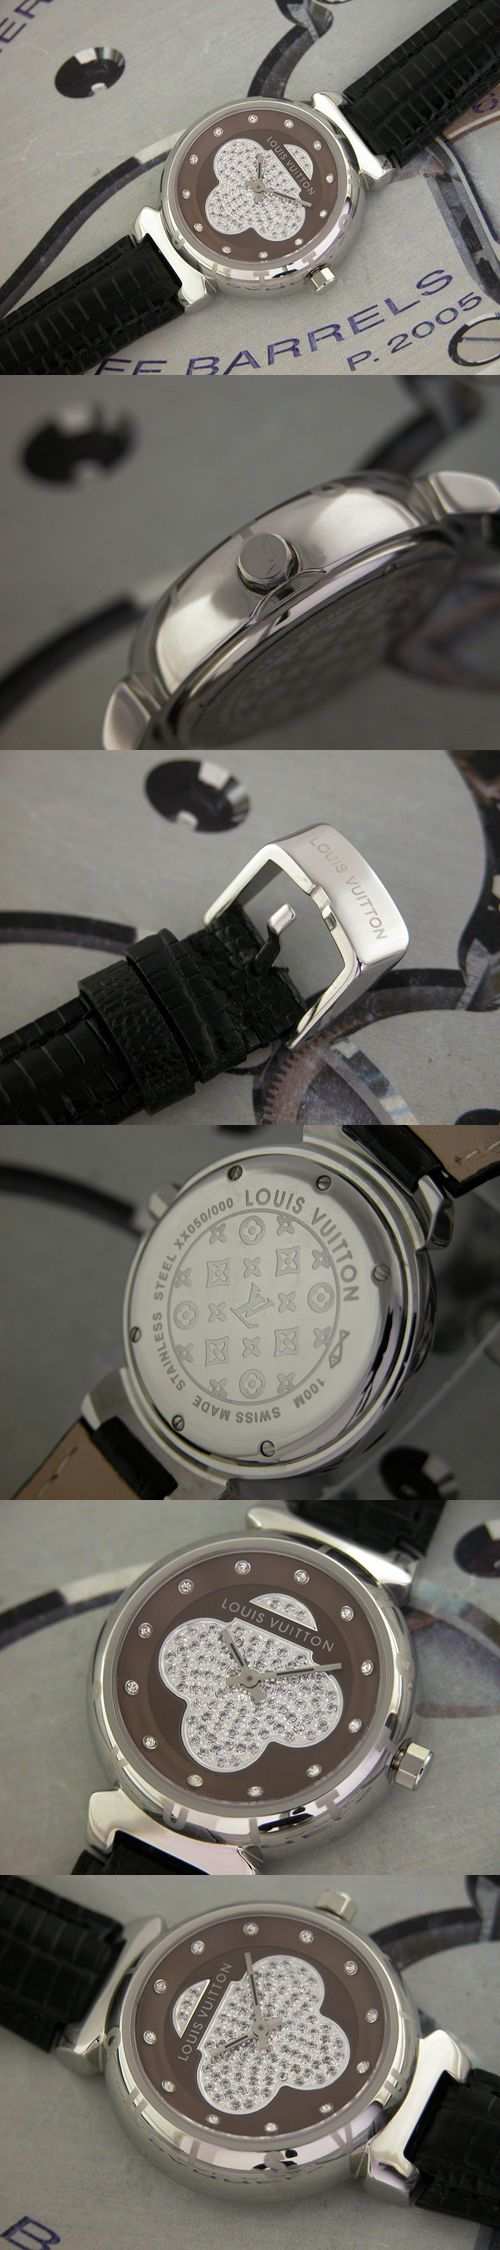 おしゃれなブランド時計がルイヴィトン-タンブール-LOUIS VUITTON-LV00027J-女性用を提供します.